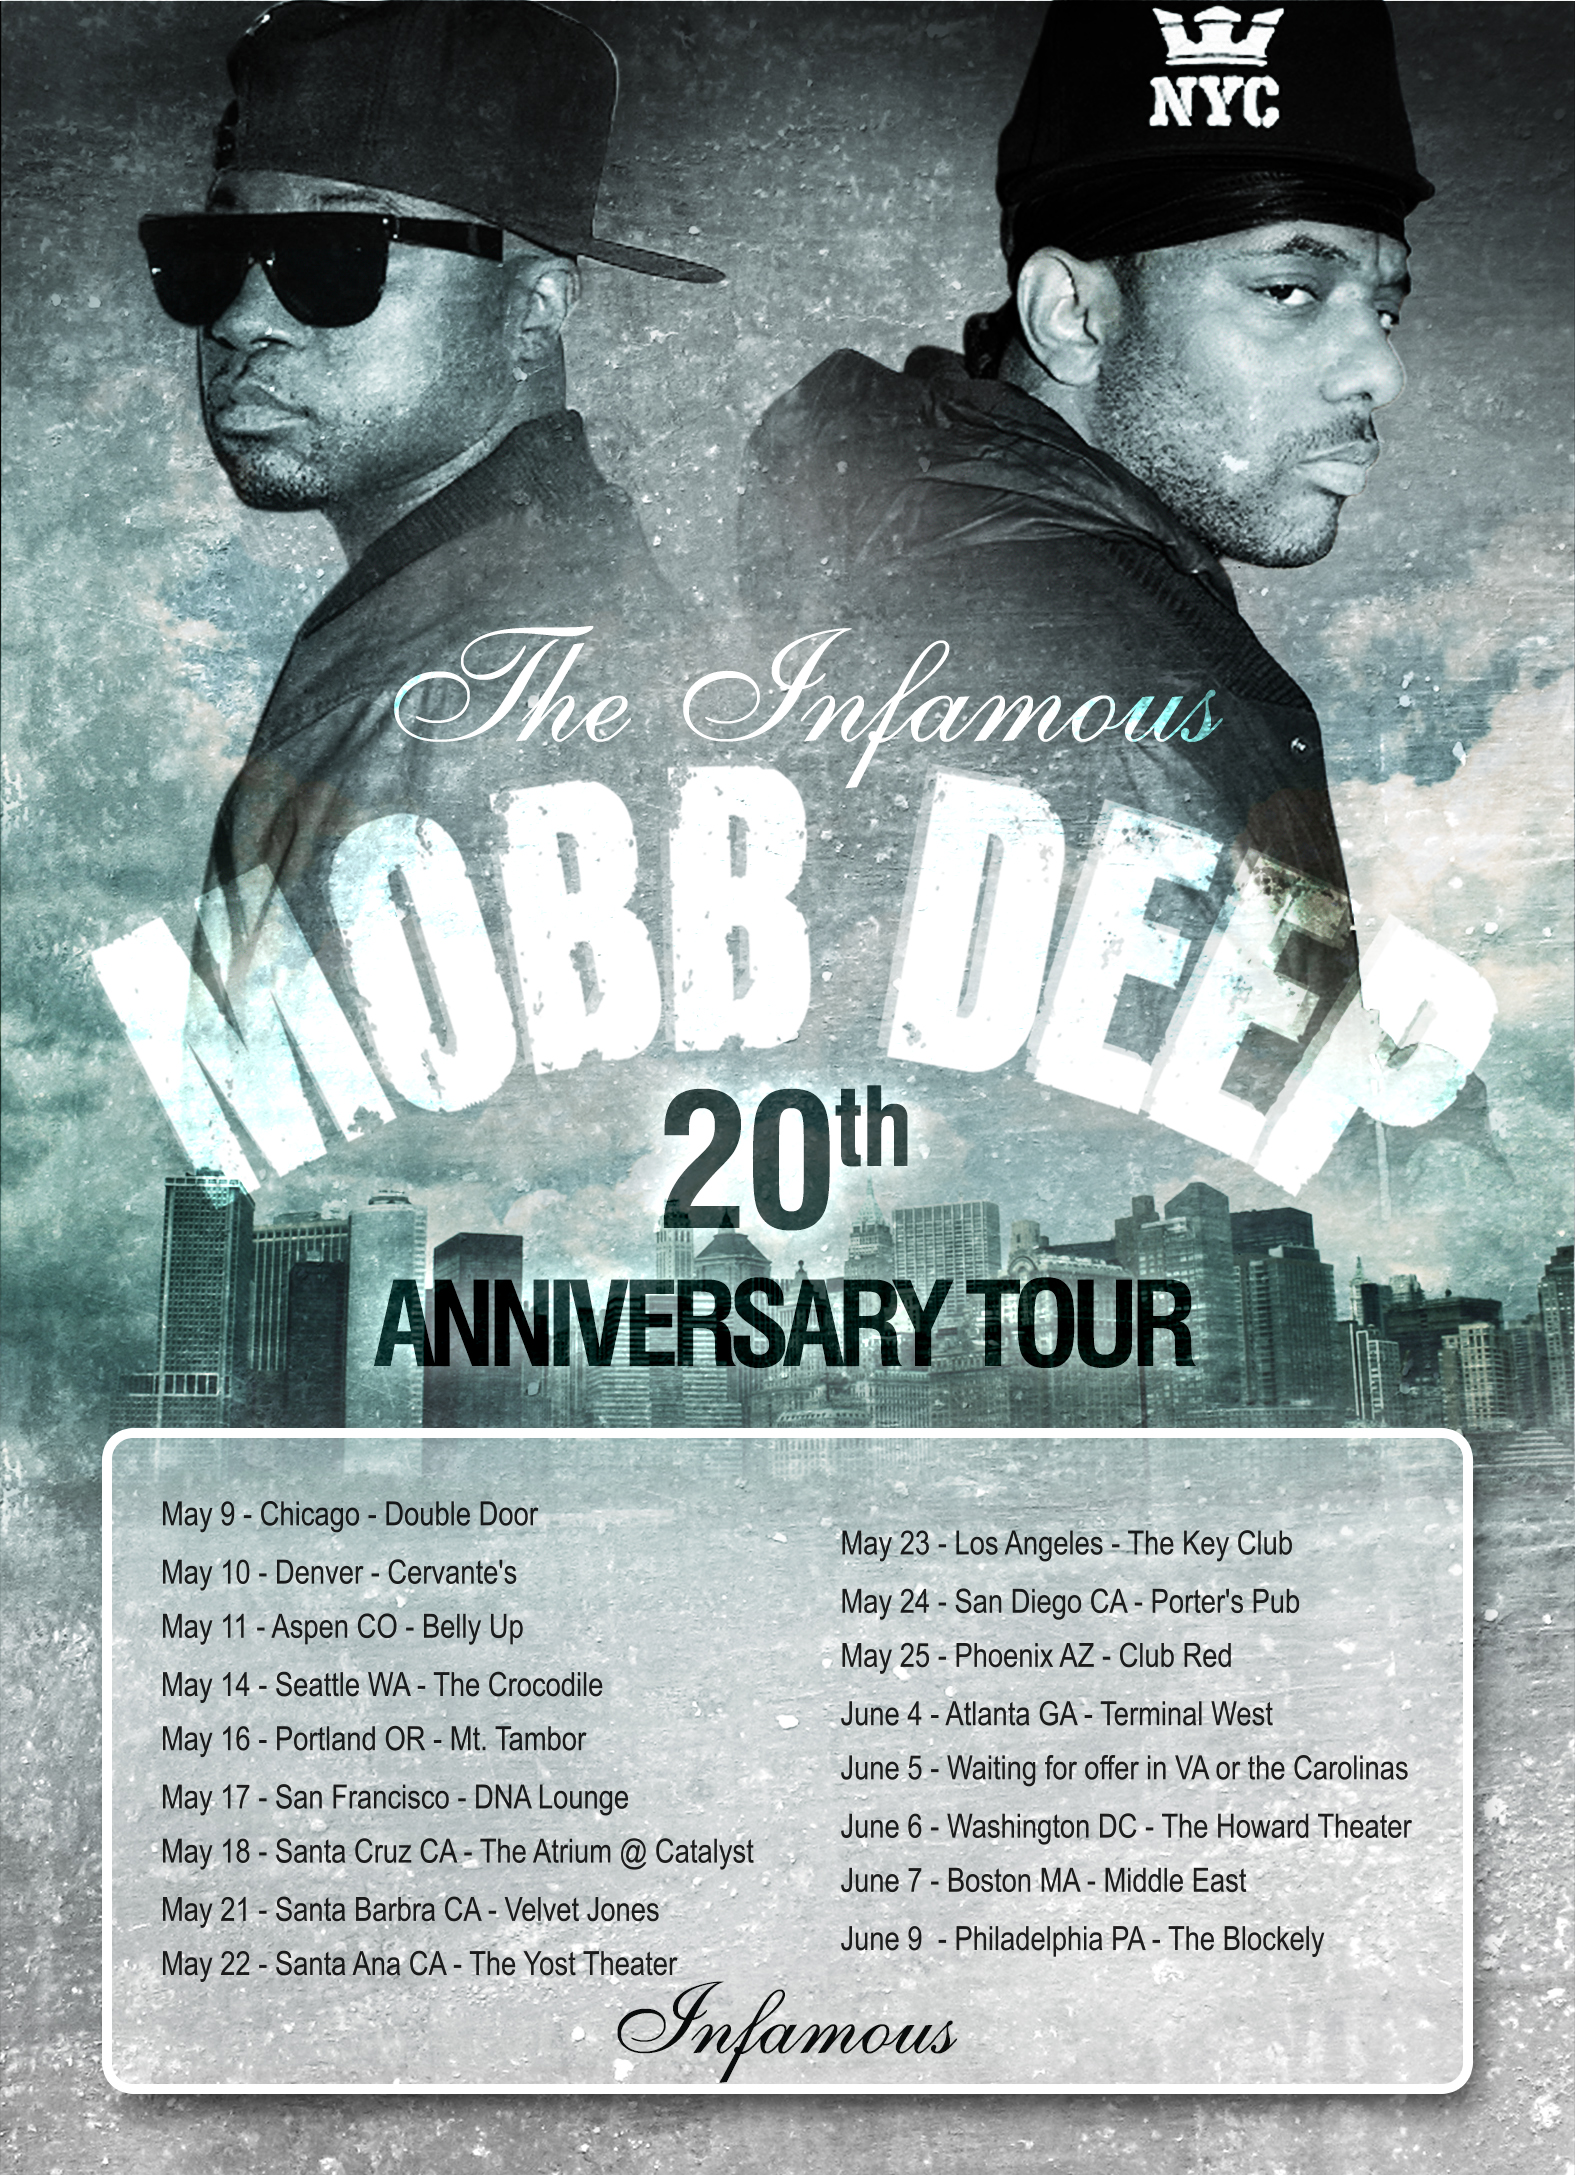 MOBB_DEEP2_TOUR20_2013